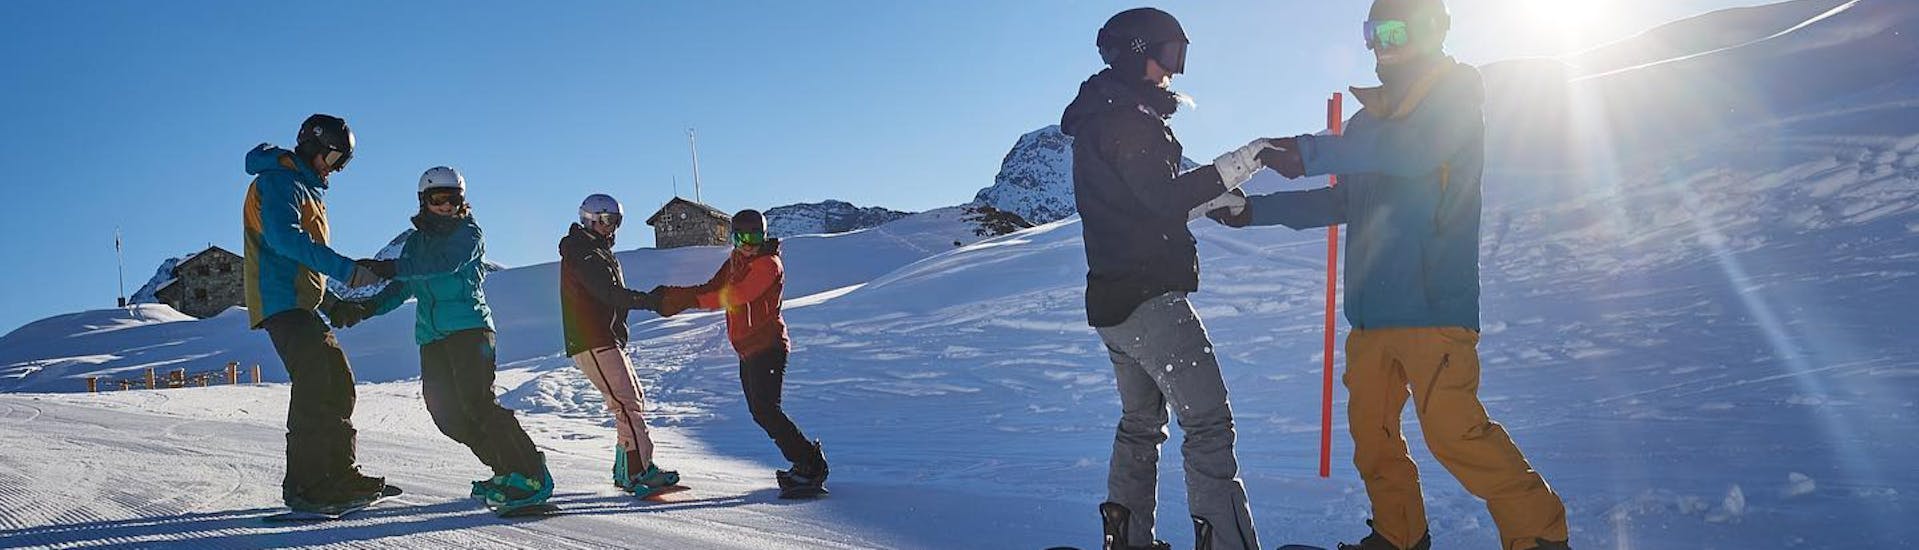 Lezioni di Snowboard a partire da 7 anni.